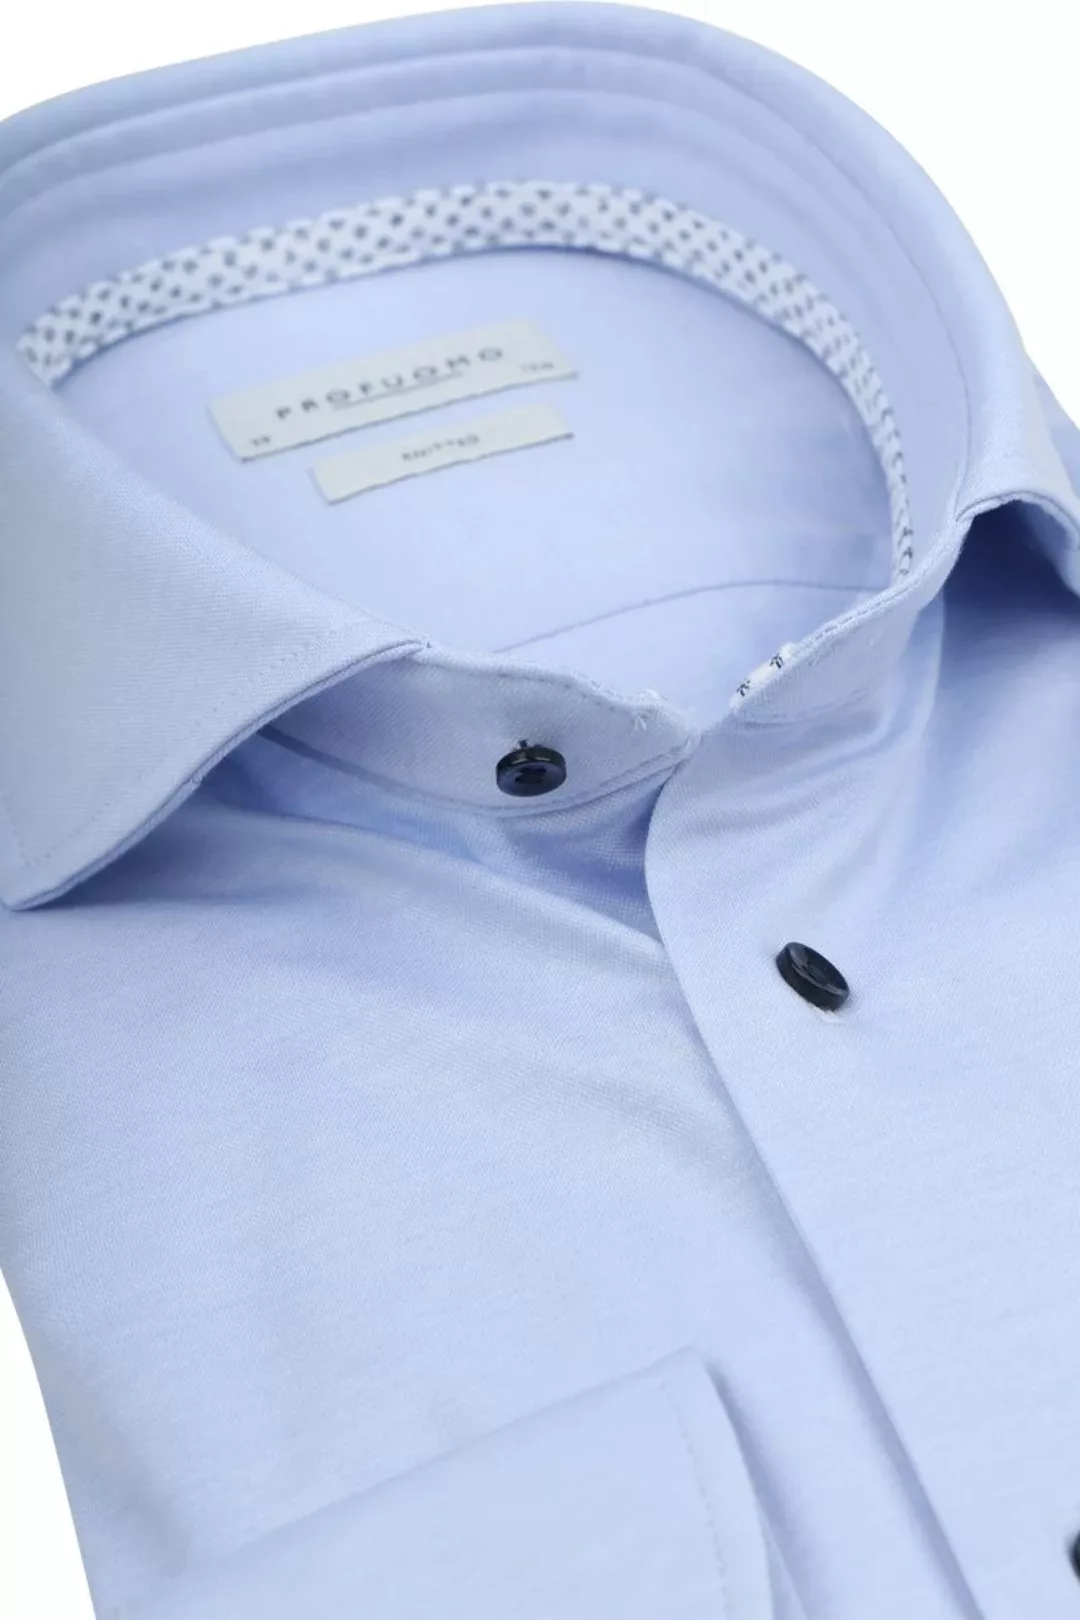 Profuomo Hemd Knitted Slim Fit Hellblau Melange - Größe 41 günstig online kaufen